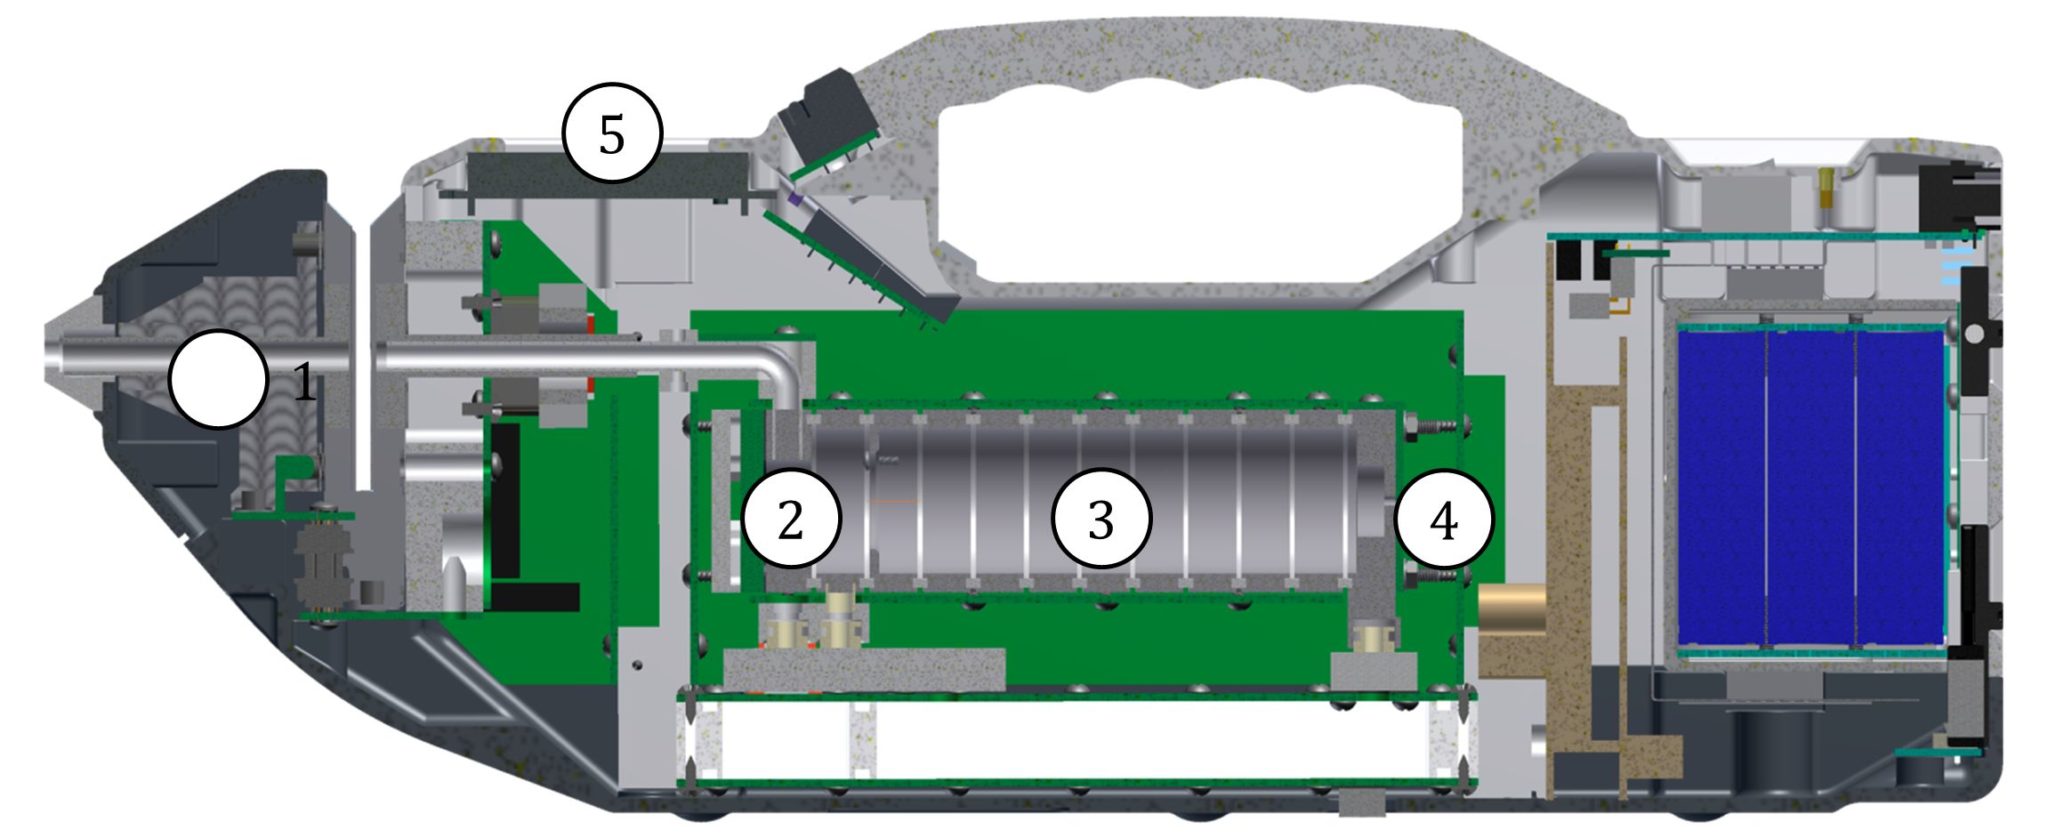 Ионно дрейфовый детектор. Ионно-дрейфовый детектор Кербер-т. Портативный ионно-дрейфовый детектор Кербер-т. Спектрометр ионной подвижности ИДД Кербер-т. Кербер-т ионно-дрейфовый детектор цена.